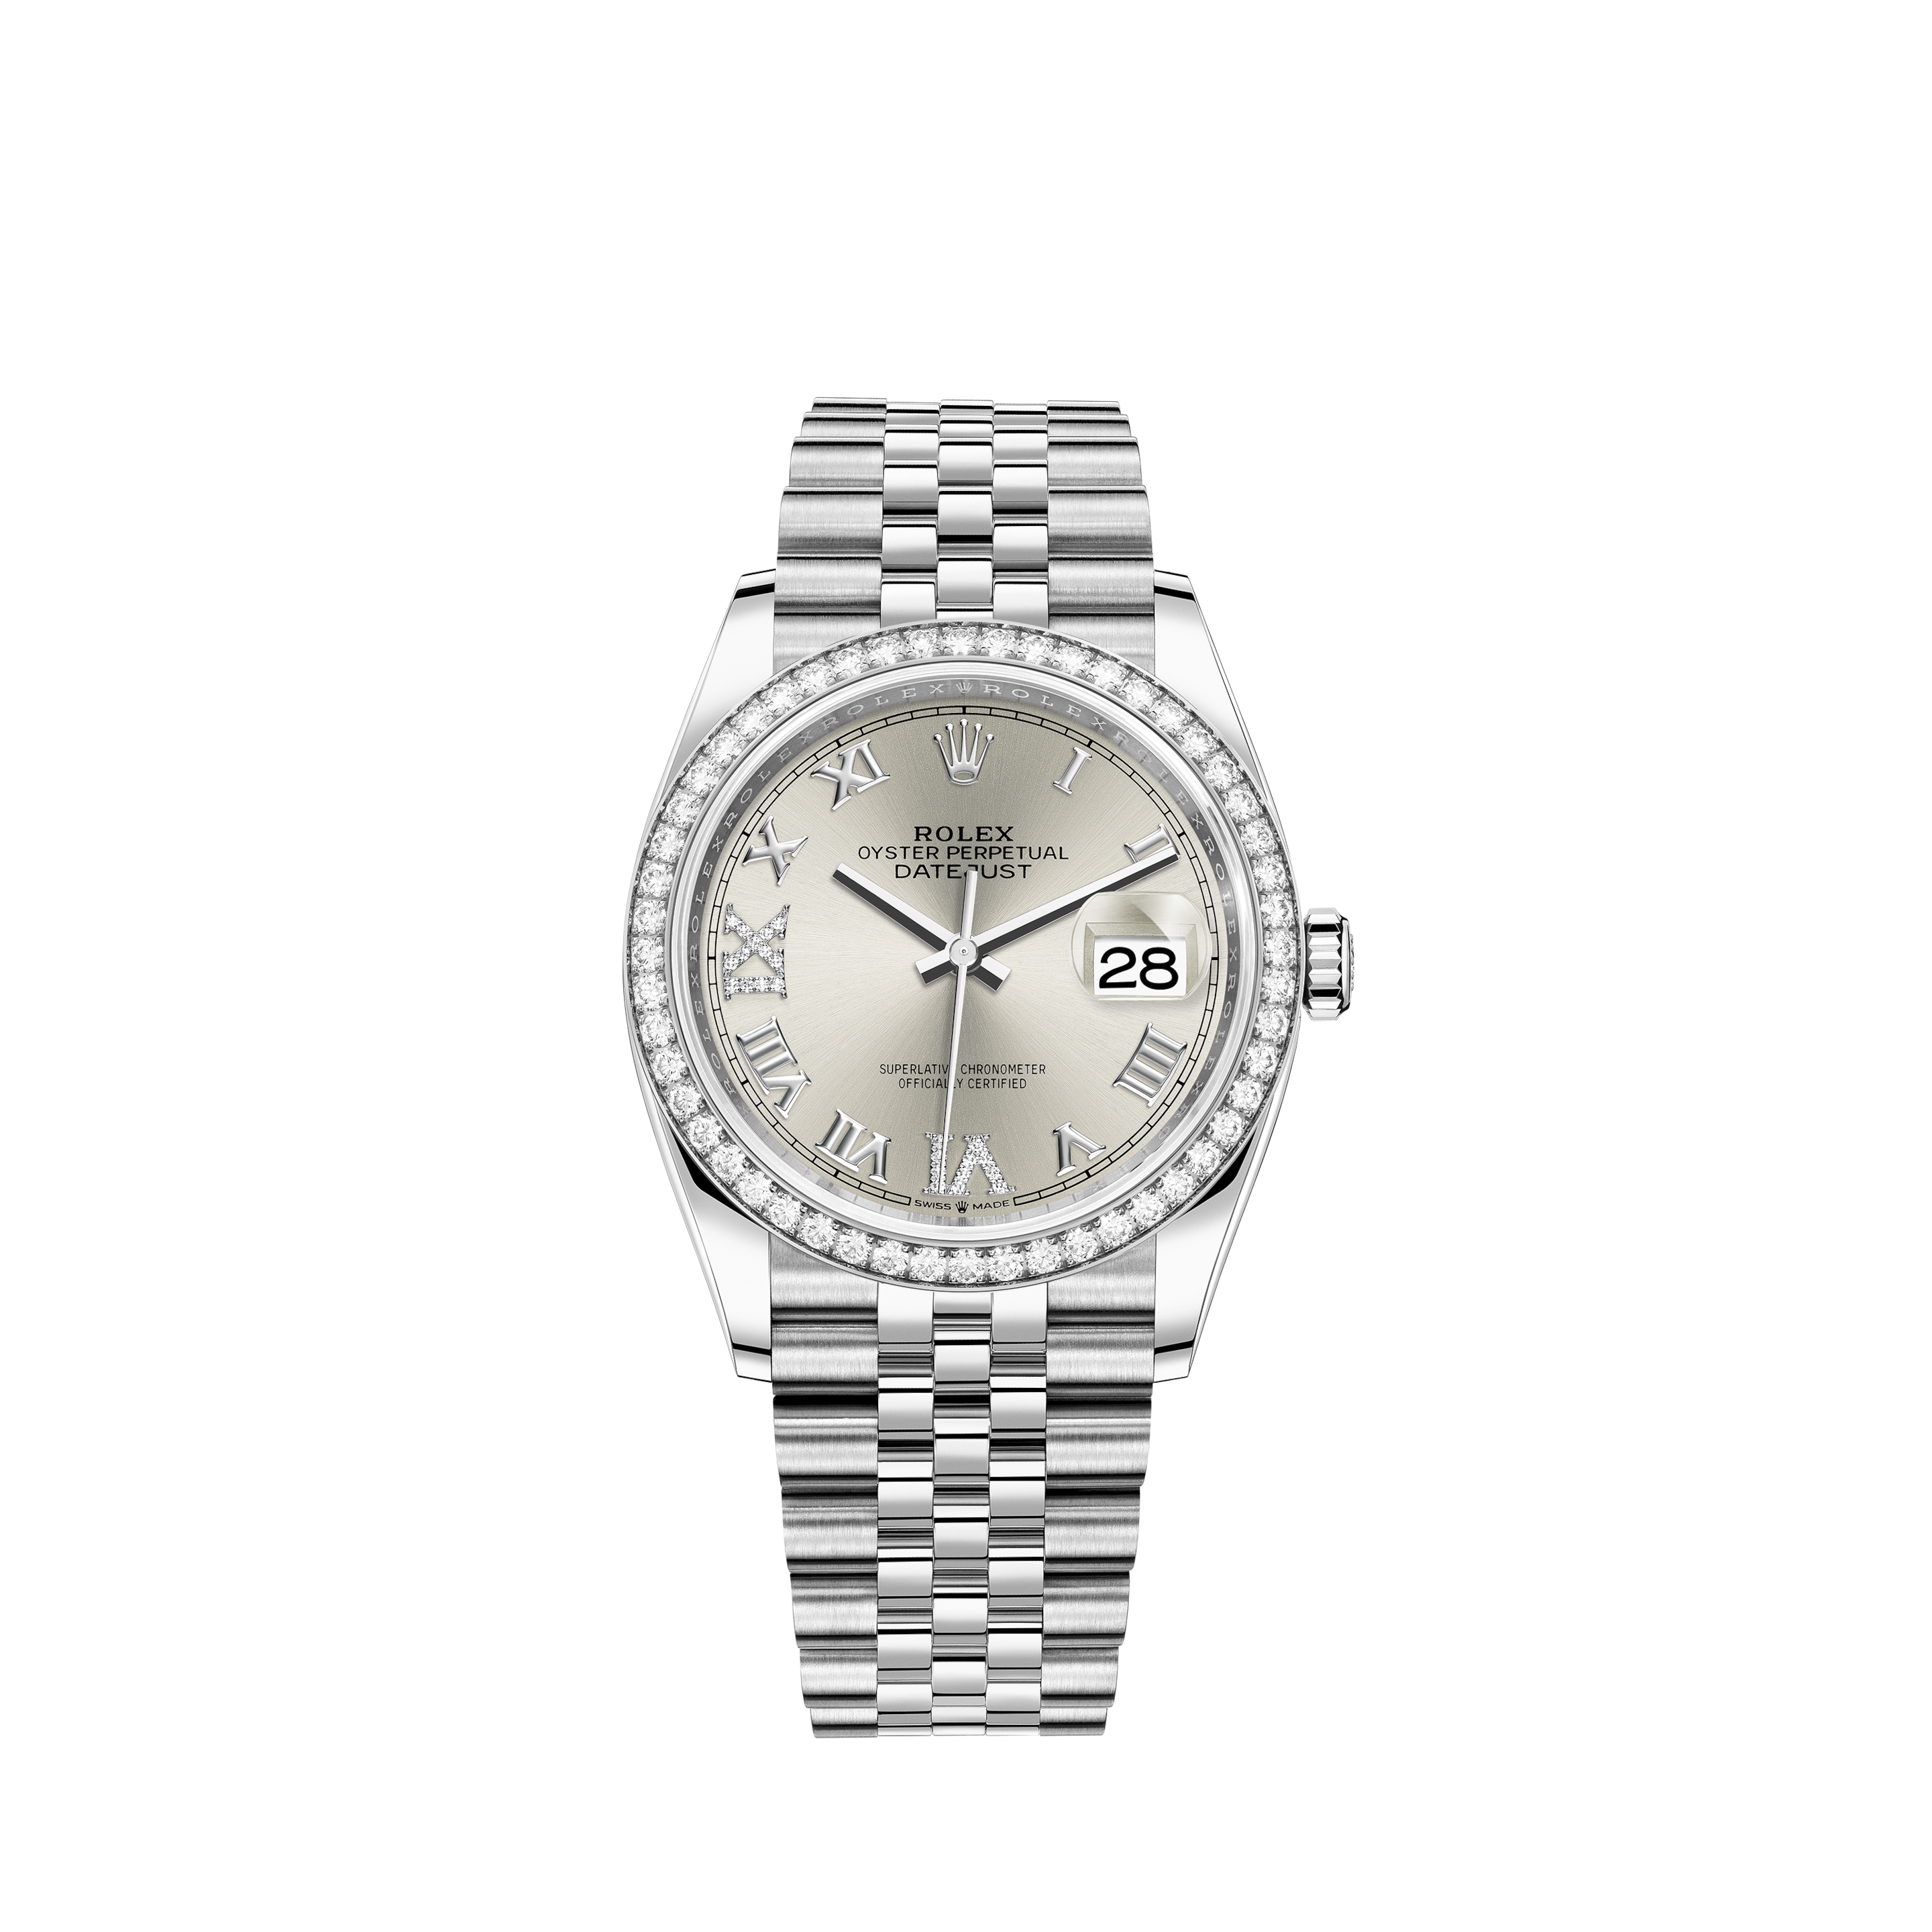 Rolex Datejust 41 - Bright black dial, White Rolesor/18k White Gold bezel, Full set